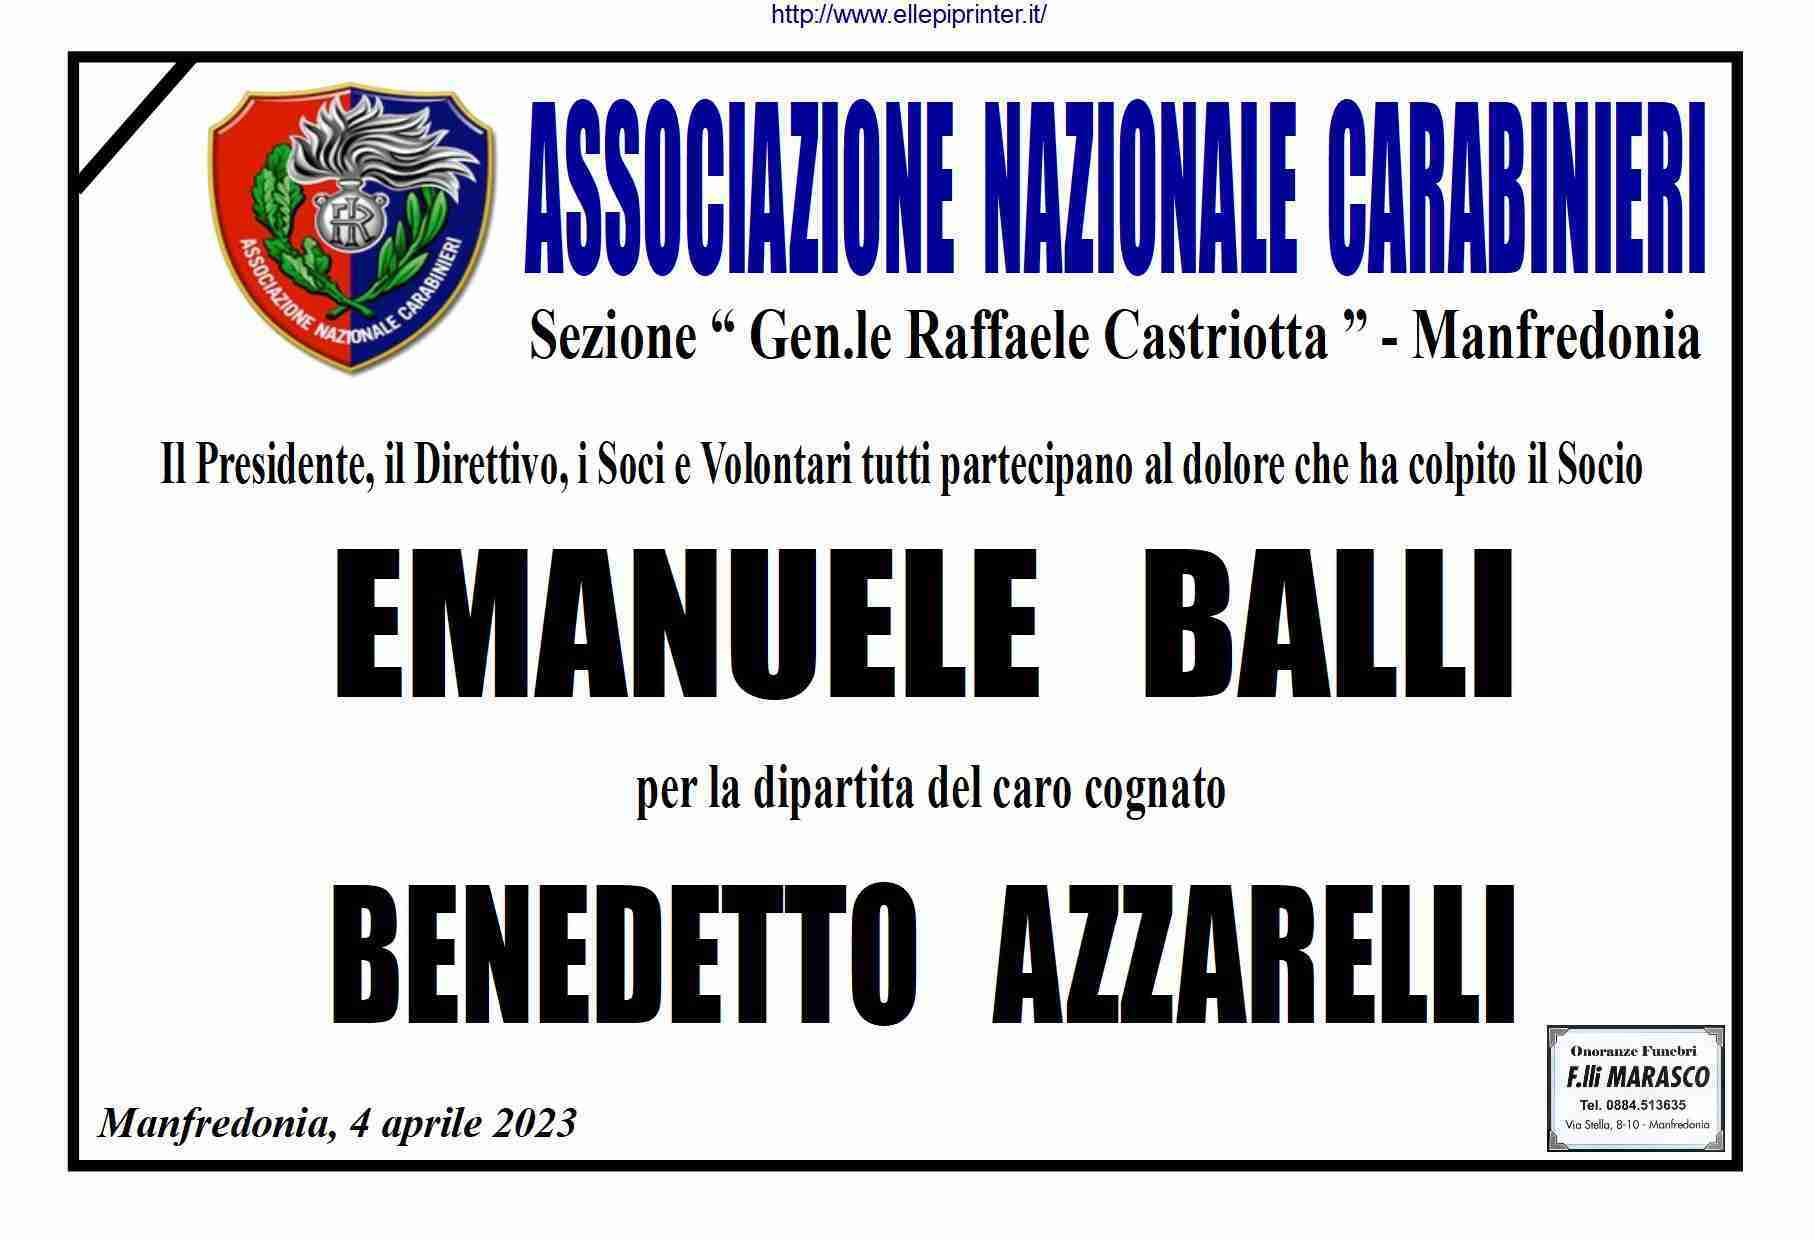 Benedetto Azzarelli